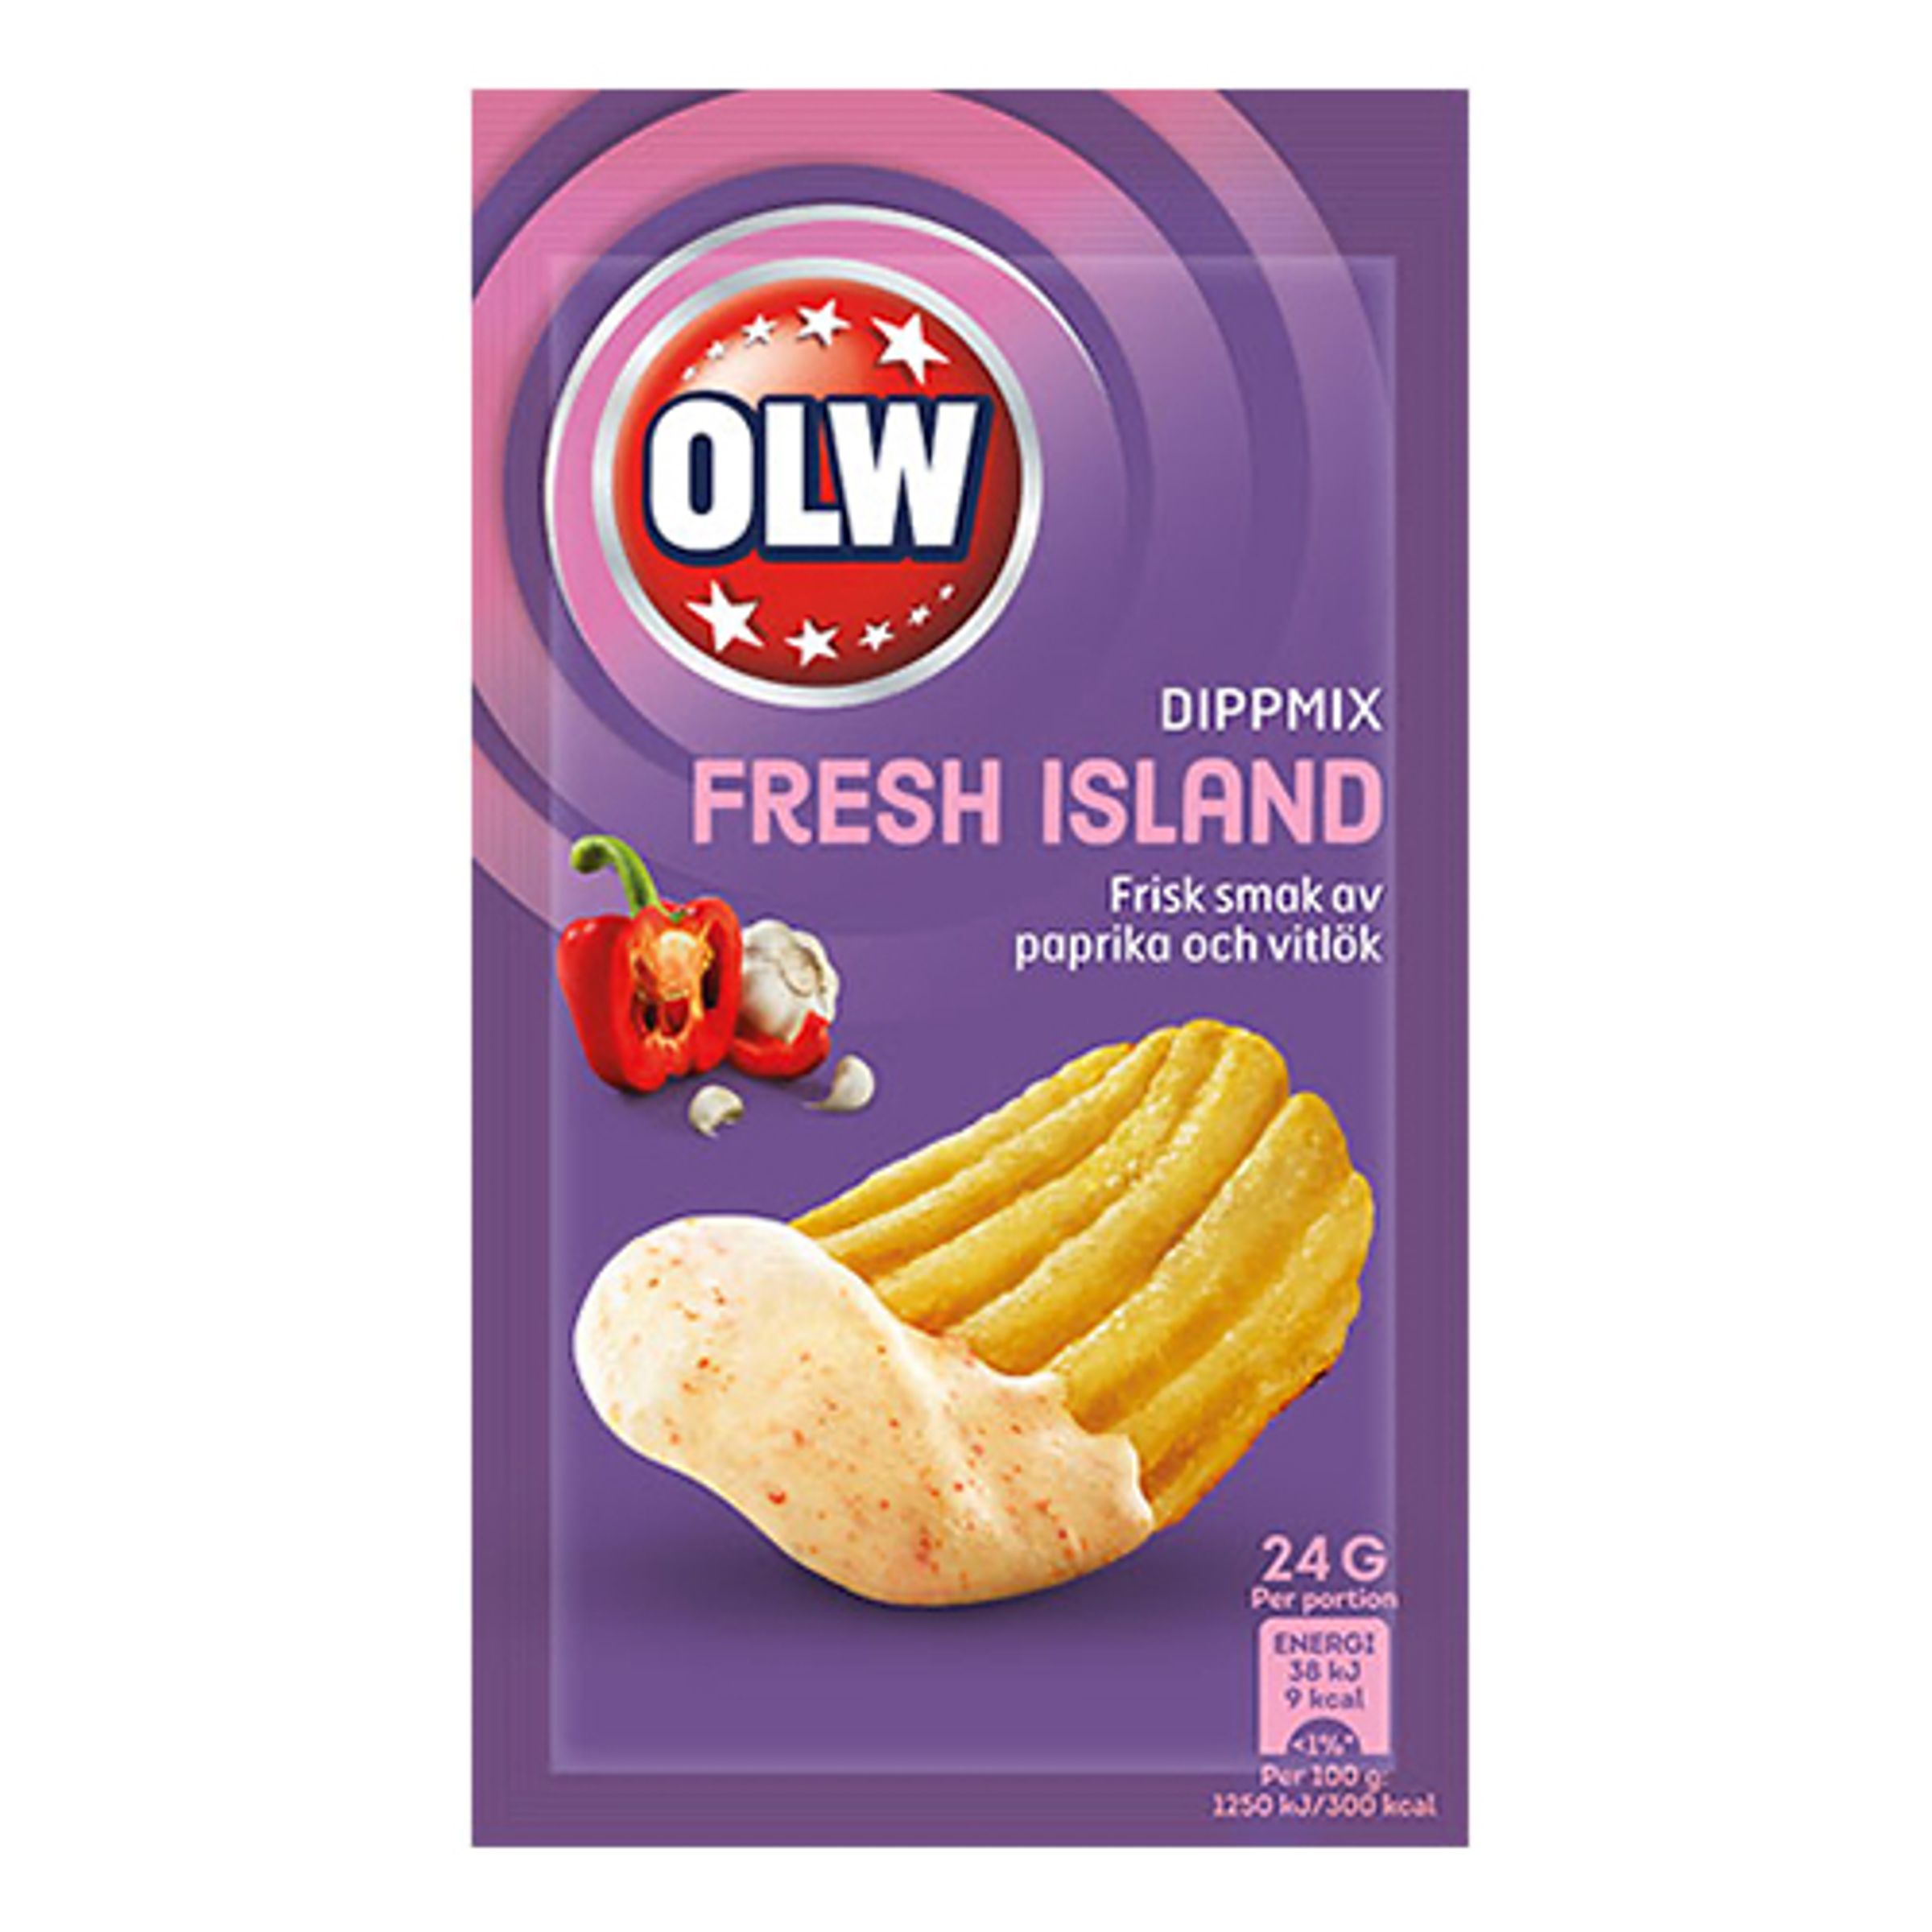 OLW Dippmix Fresh Island - 24 gram